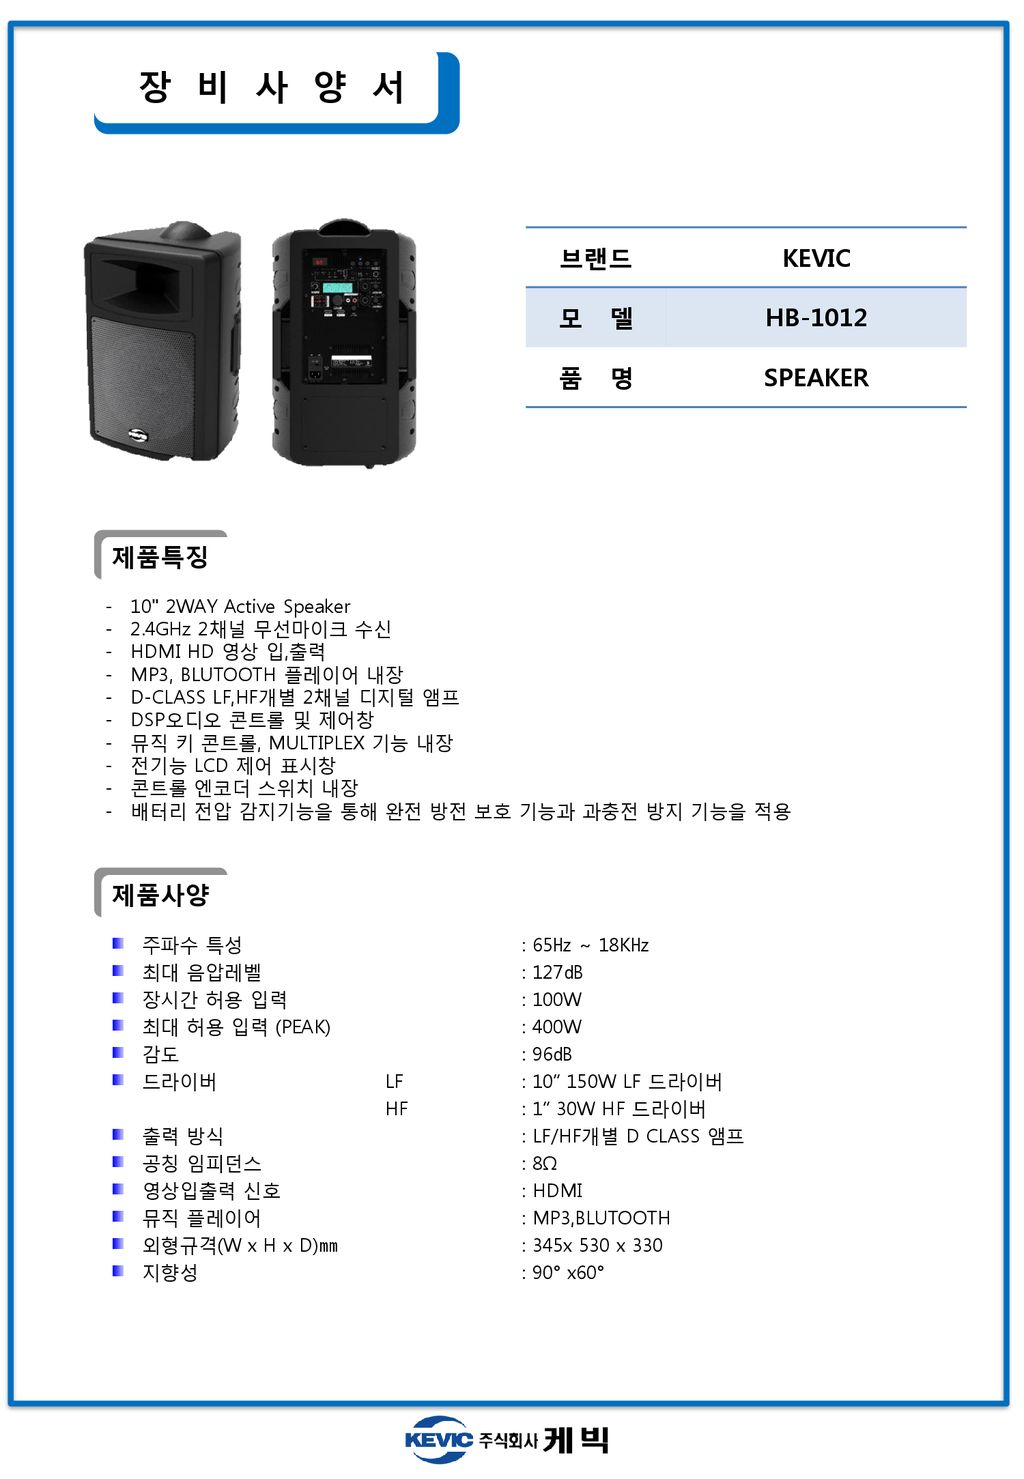 장 비 사 양 서 브랜드 KEVIC 모 델 HB-1012 품 명 SPEAKER 제품특징 제품사양